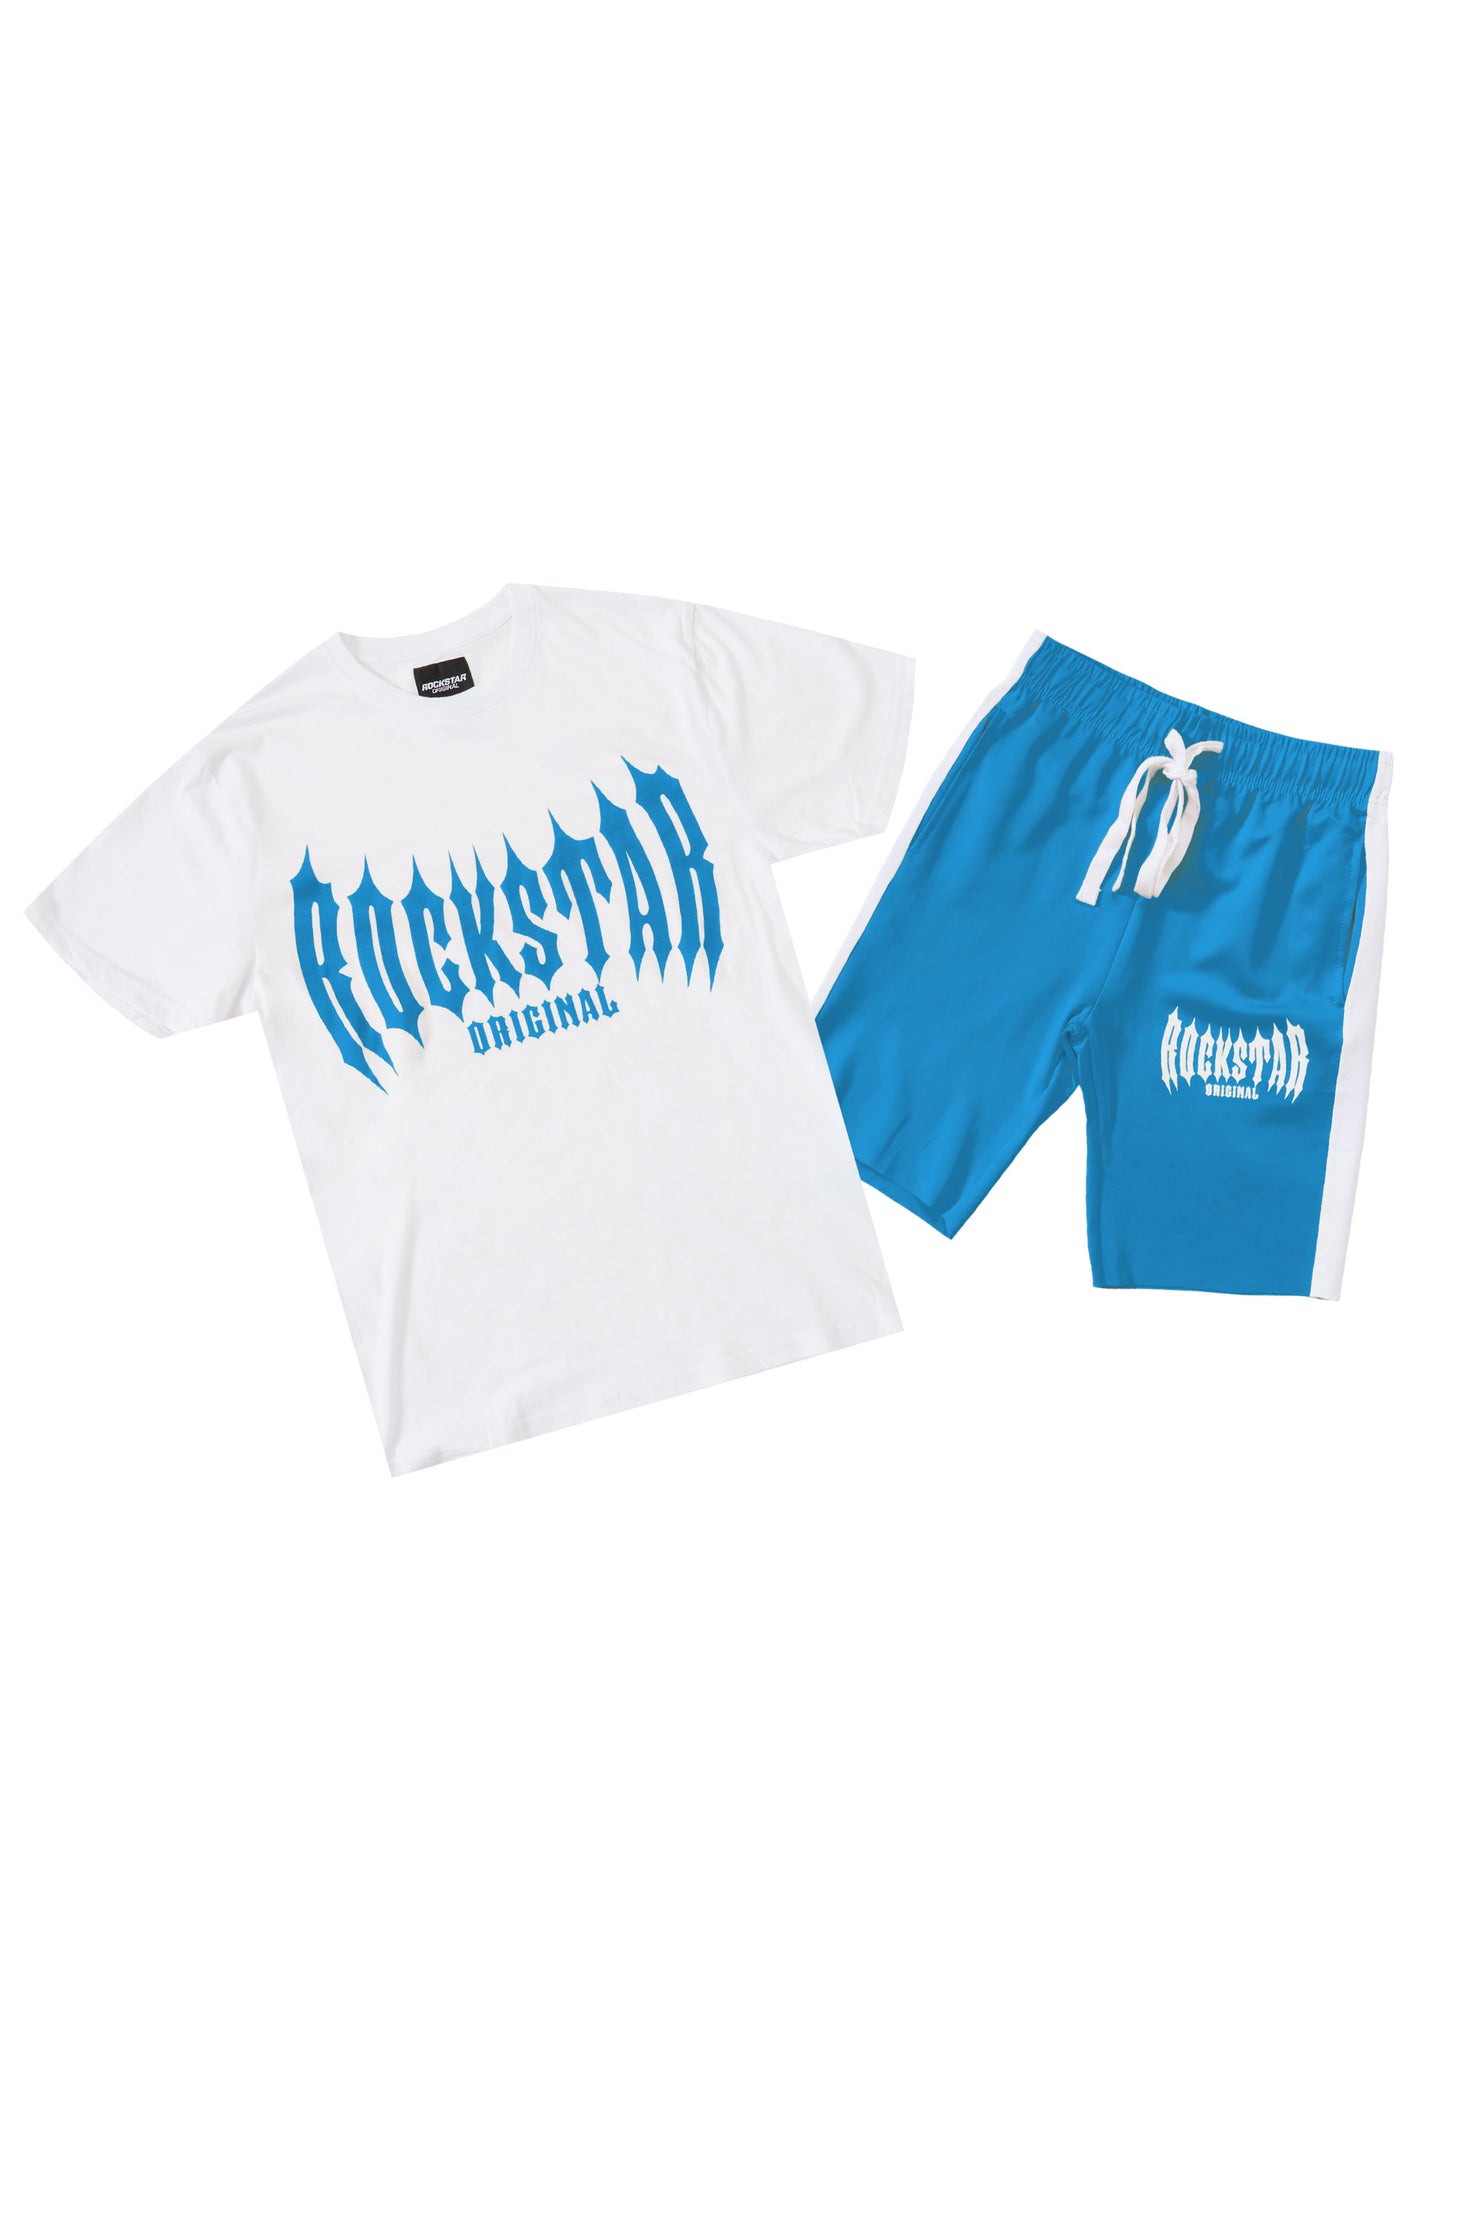 Skeller White/Blue T-Shirt Short Set